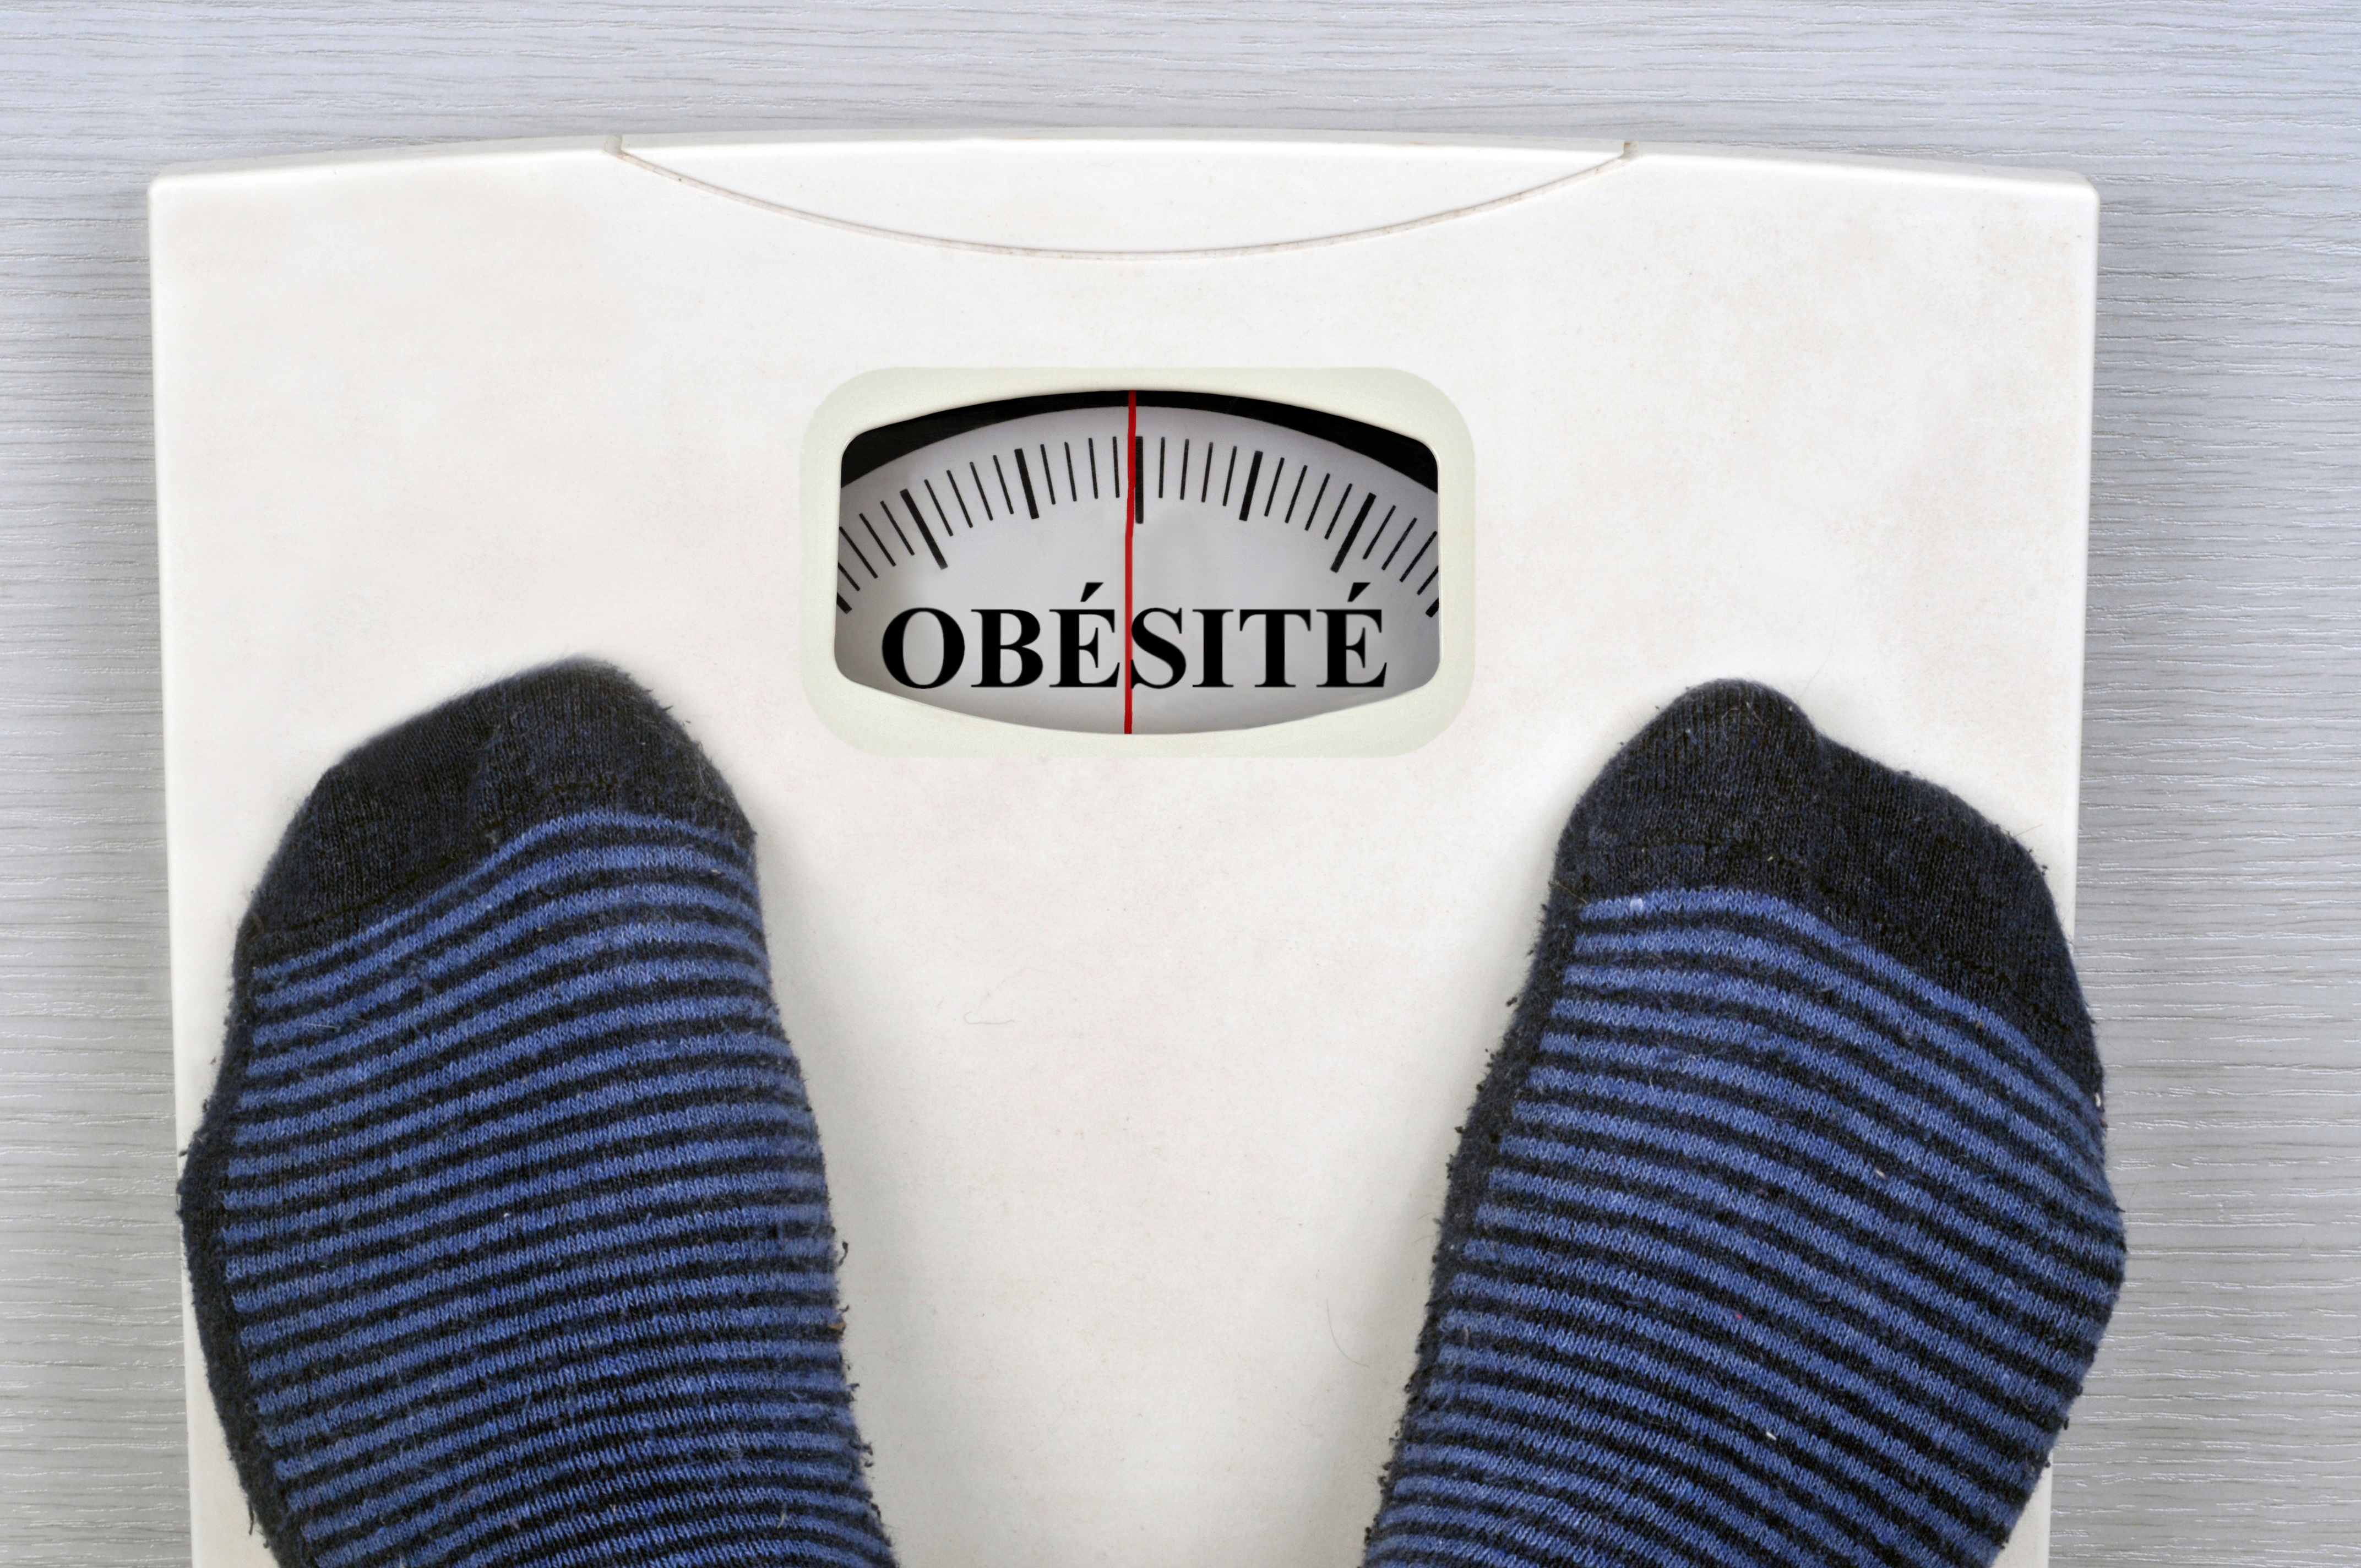 Une étude internationale révèle des conséquences de l’obésité infantile due à des mutations génétiques